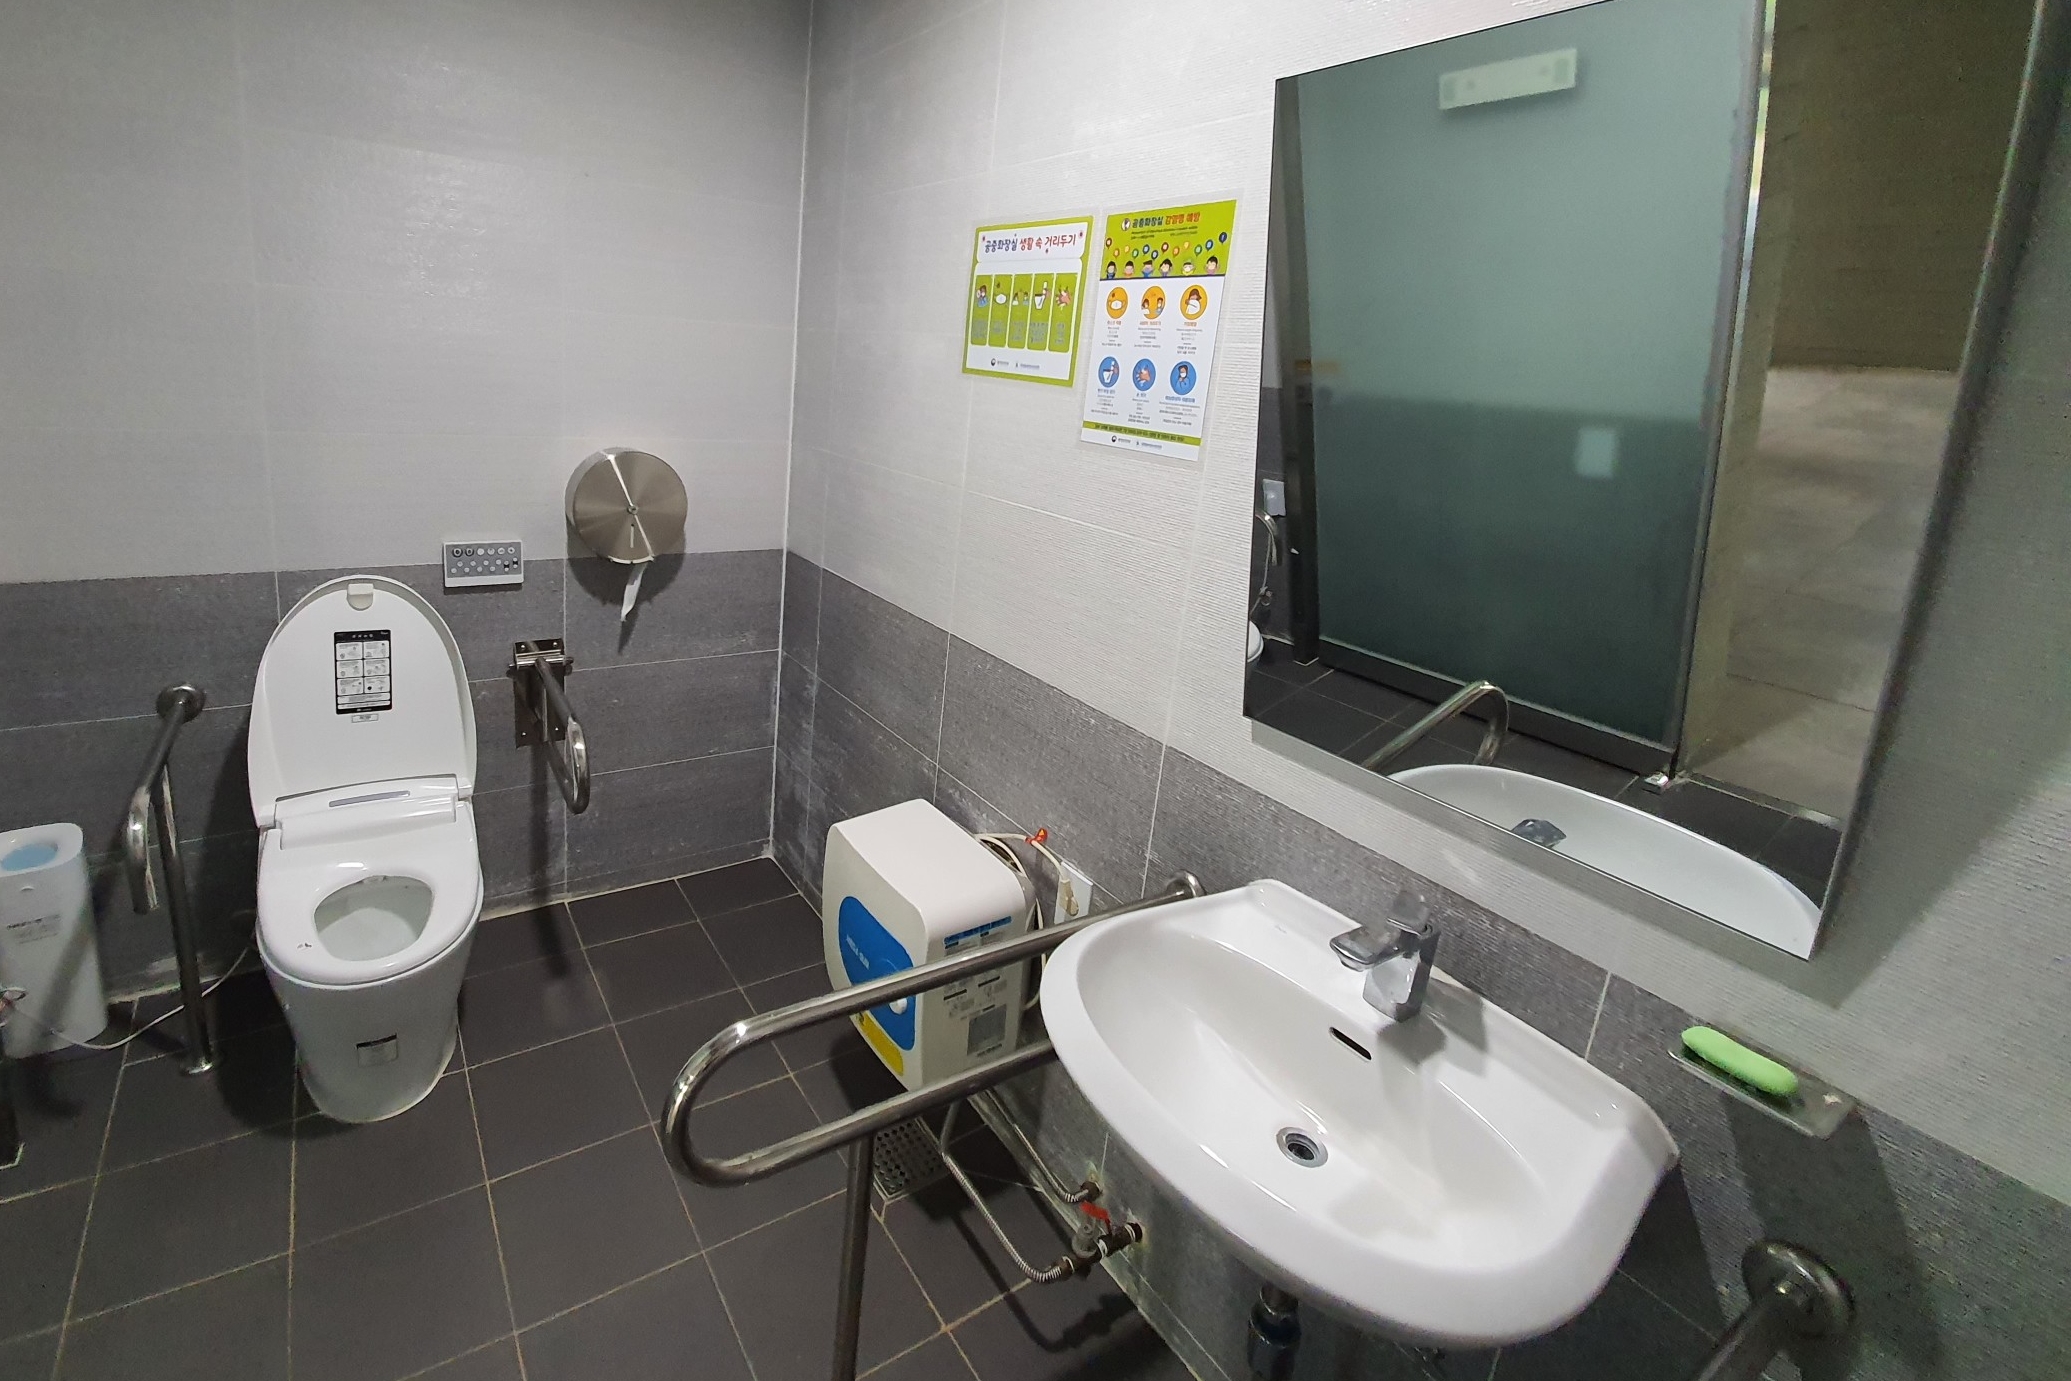 Restroom0 : Accessible restroom in Pureun Arboretum

